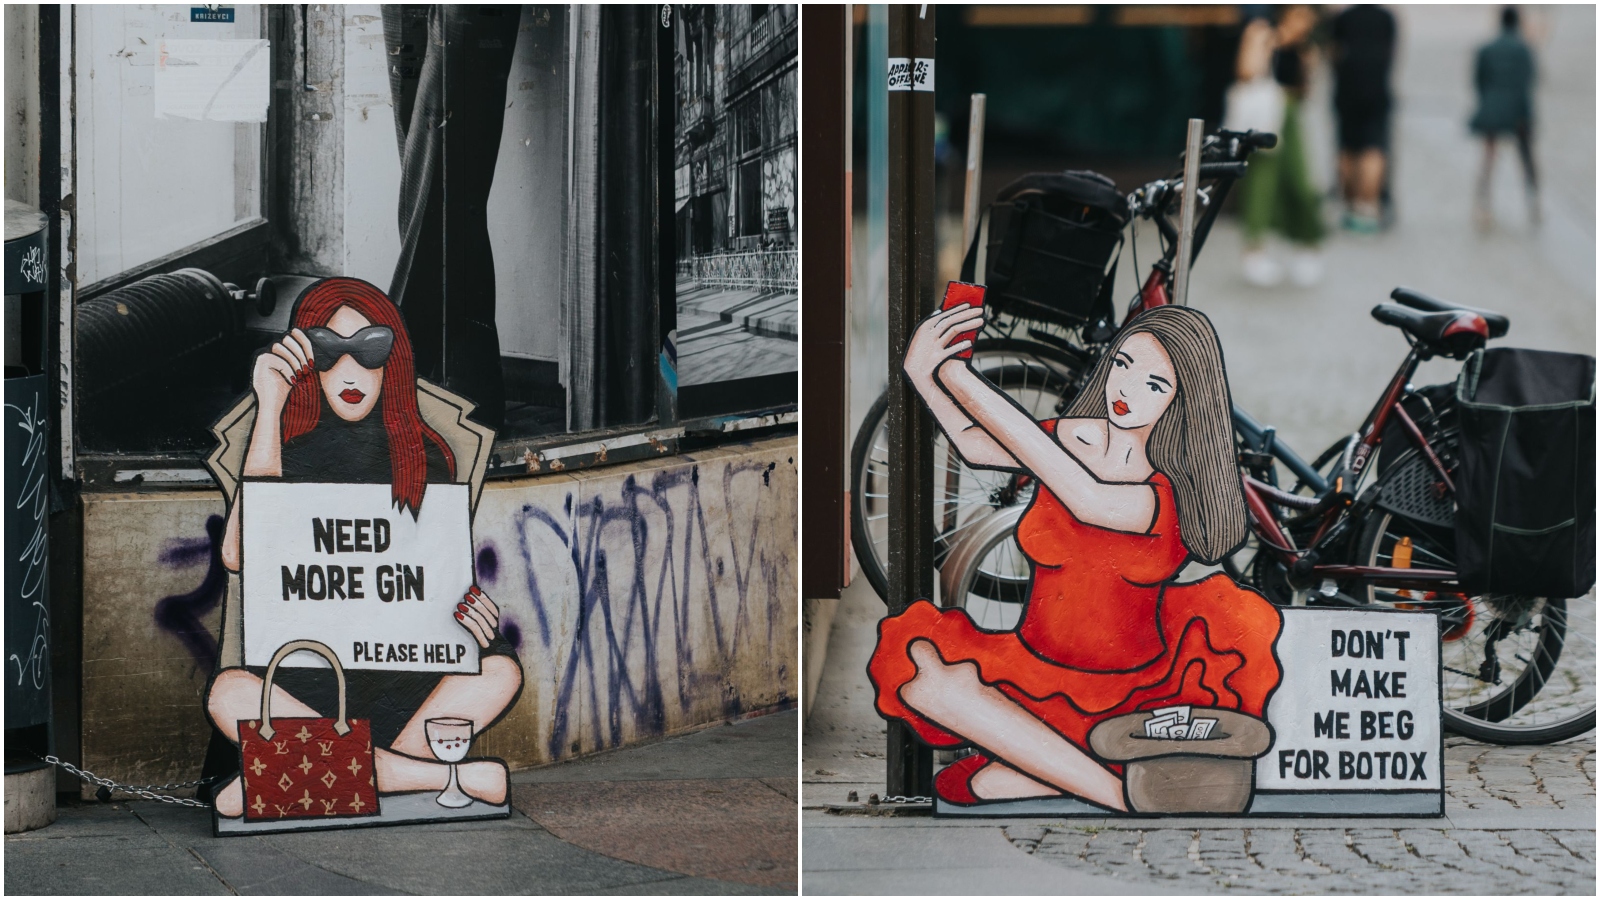 Omiljeni umjetnički projekt ‘Okolo’ ponovno je uljepšao zagrebačke ulice